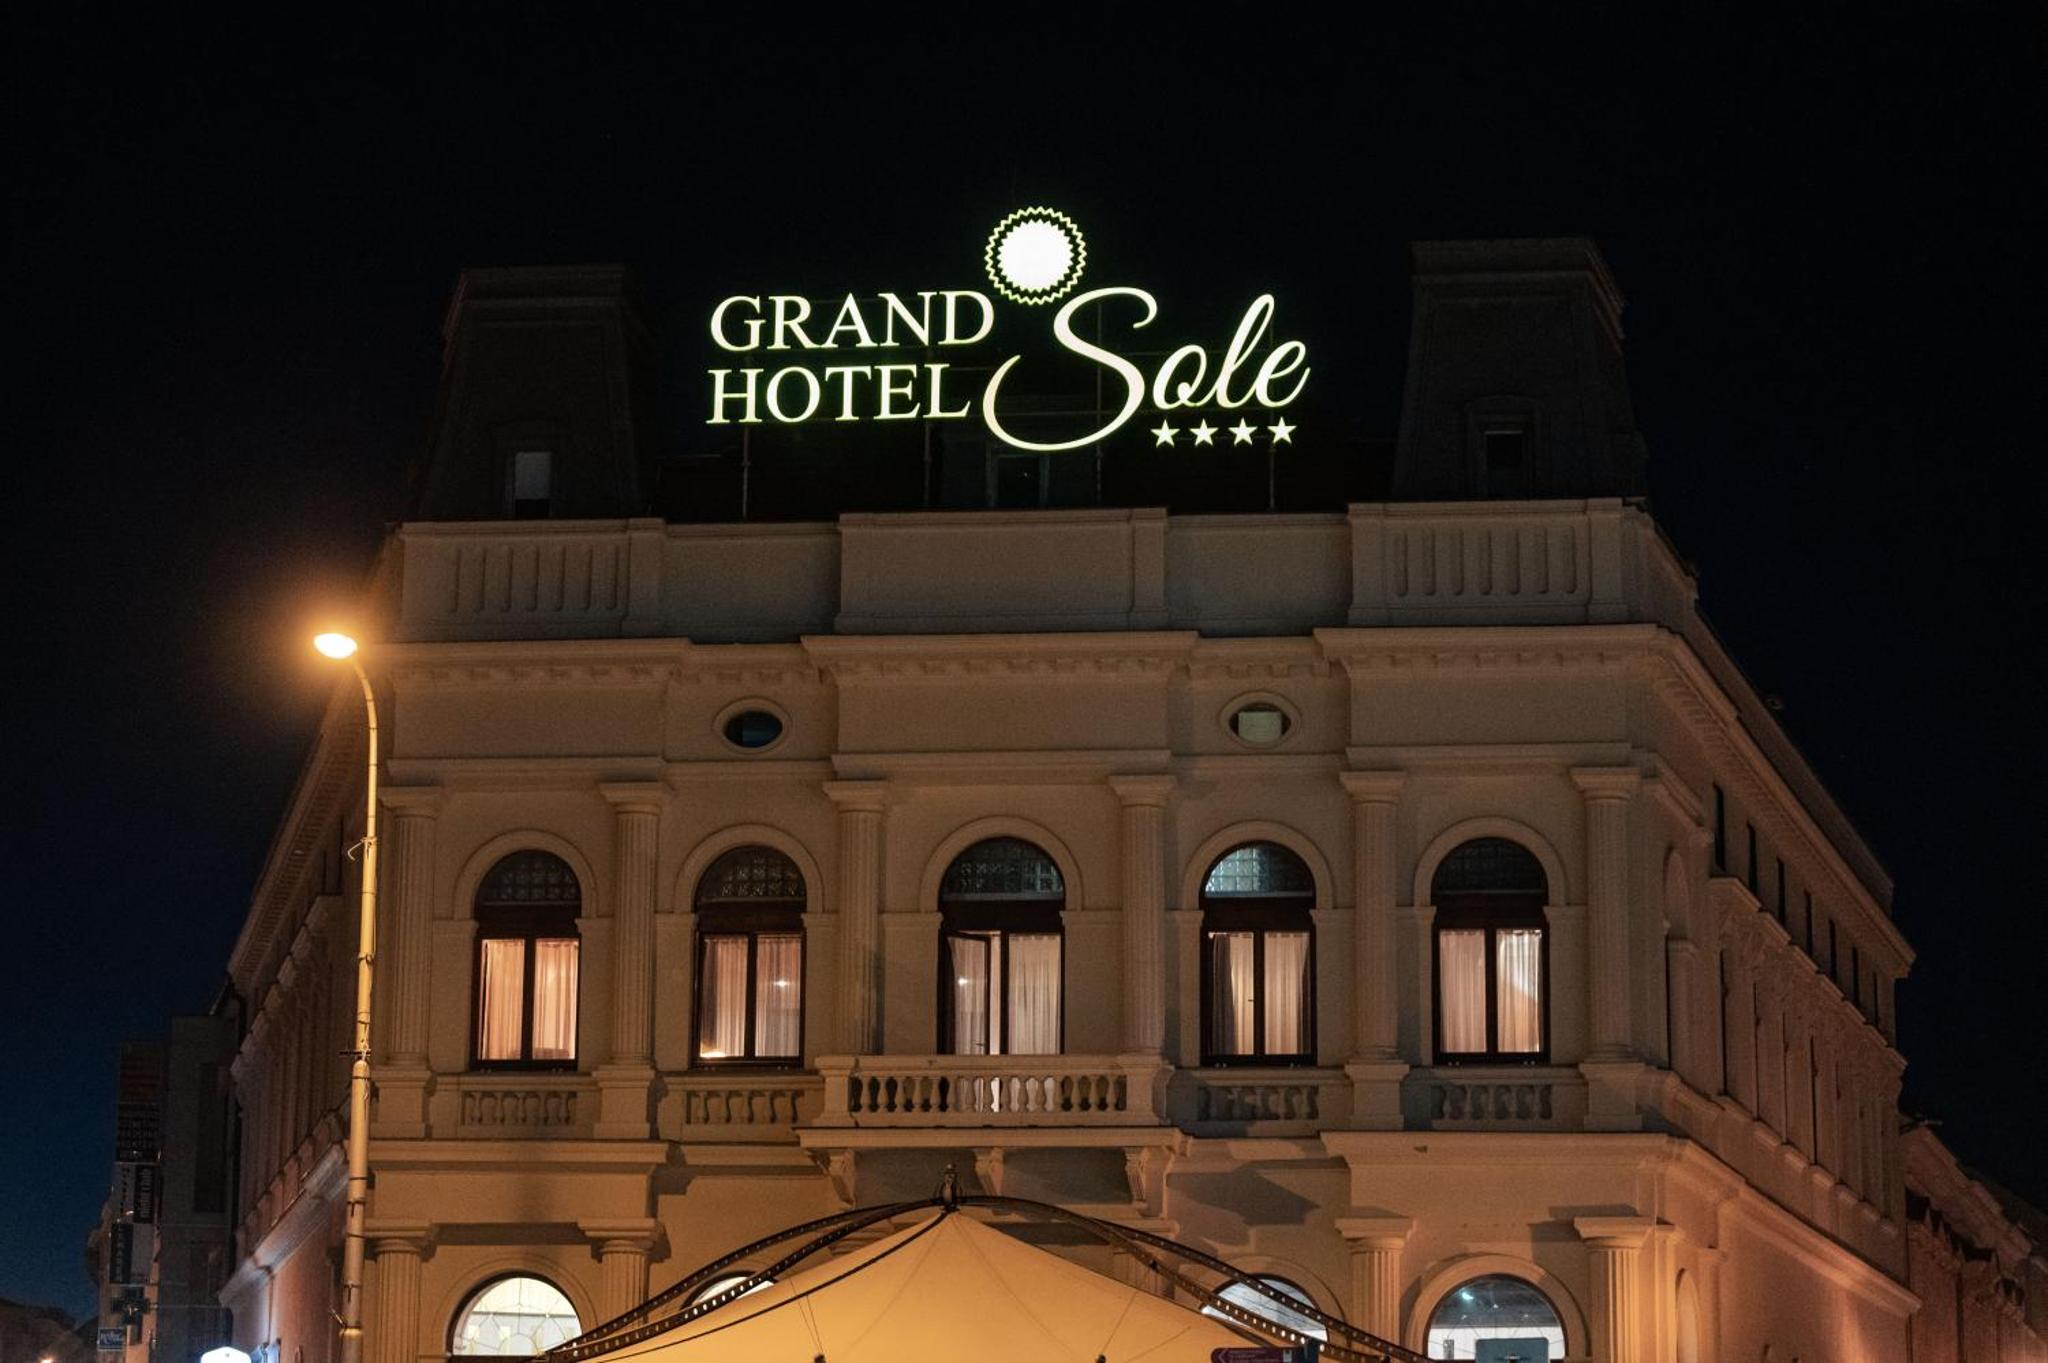 Grand Hotel Sole